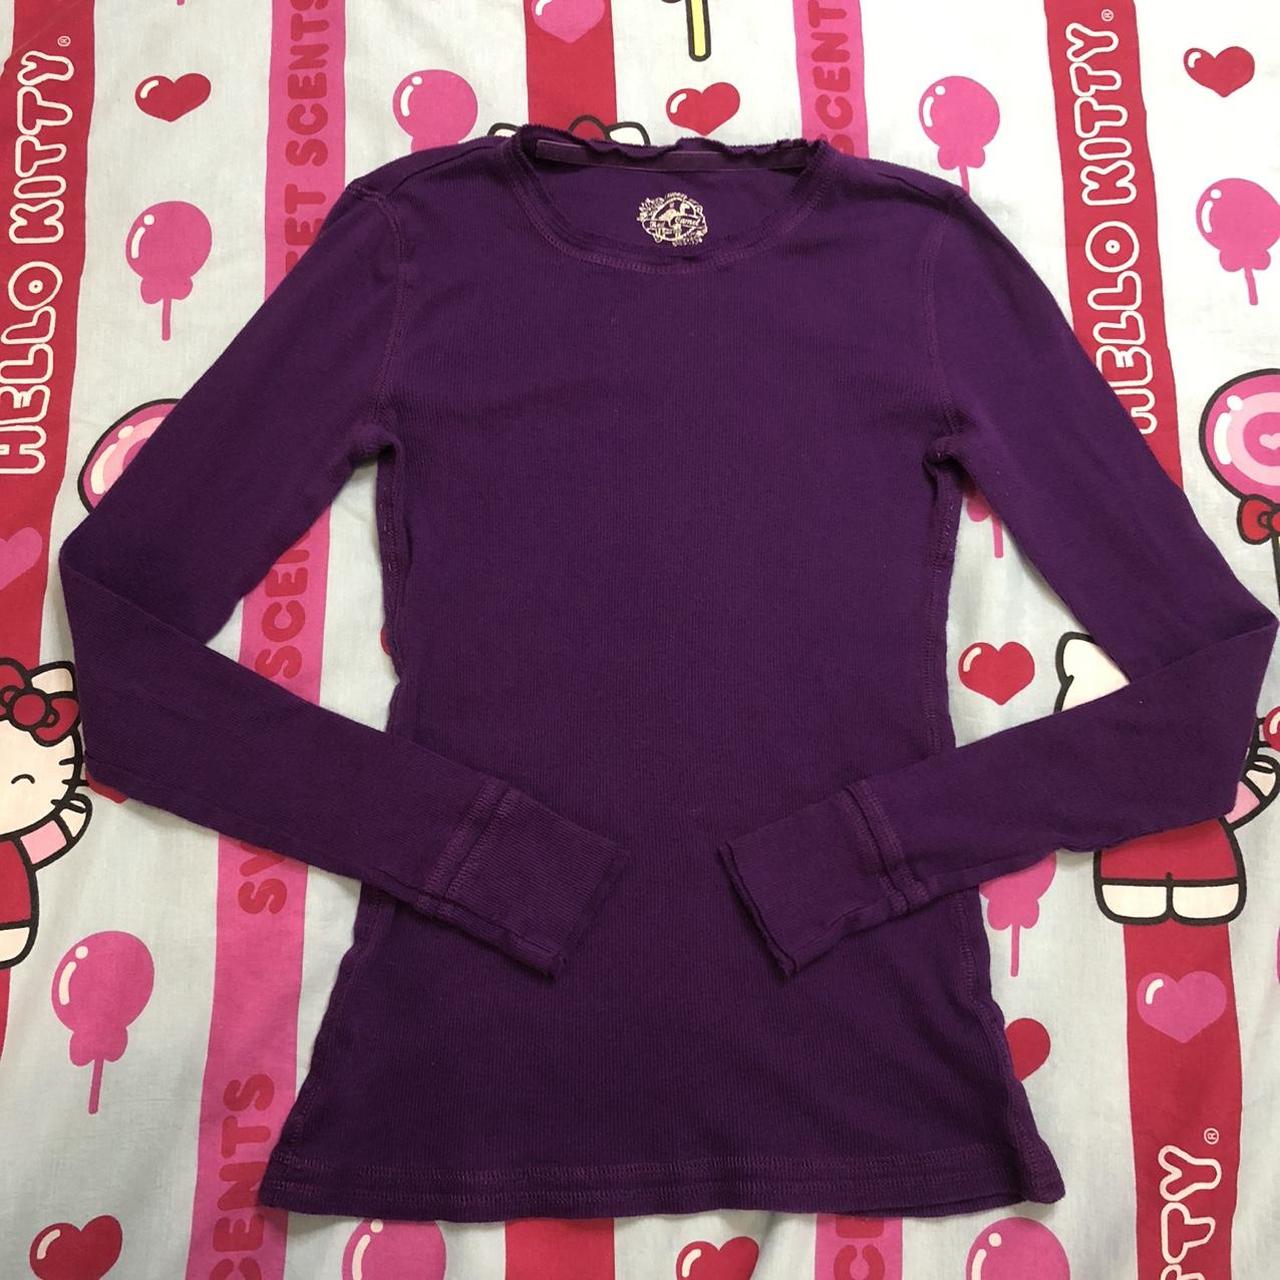 Y2k adorable form fitting long sleeve purple tee!... - Depop